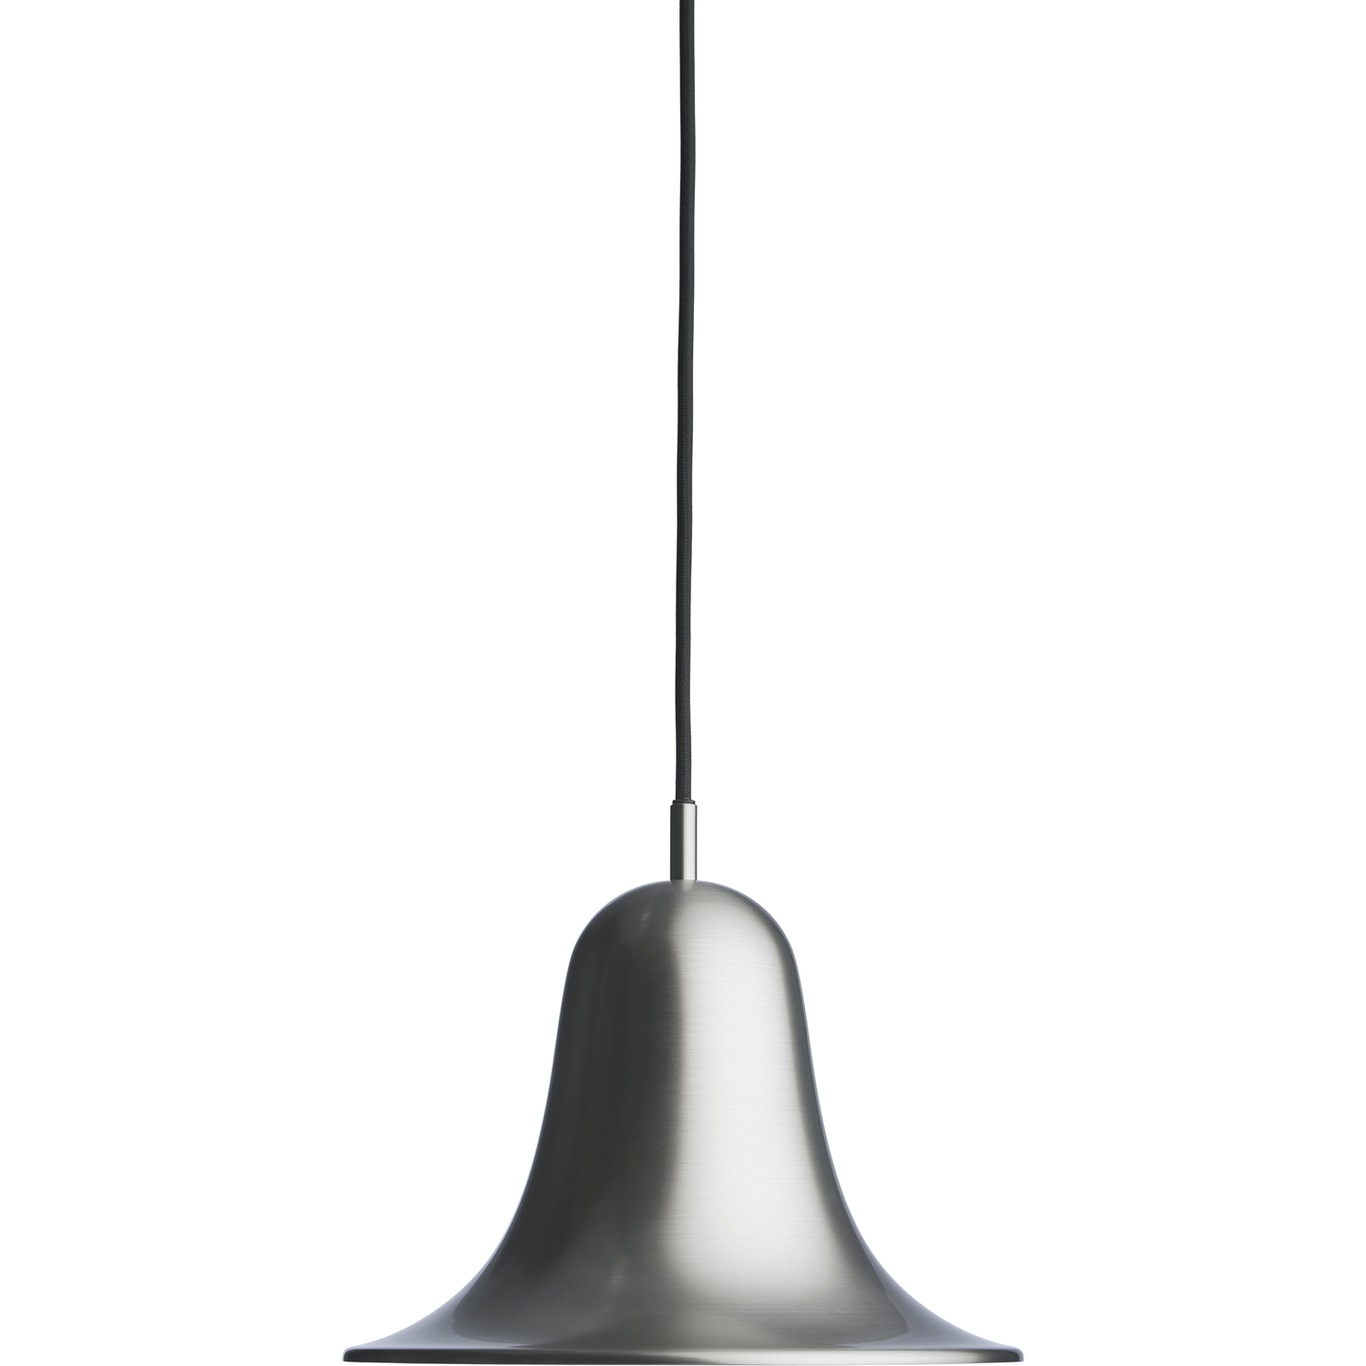 Pantop Hanglamp 23 cm, Matte Metallic